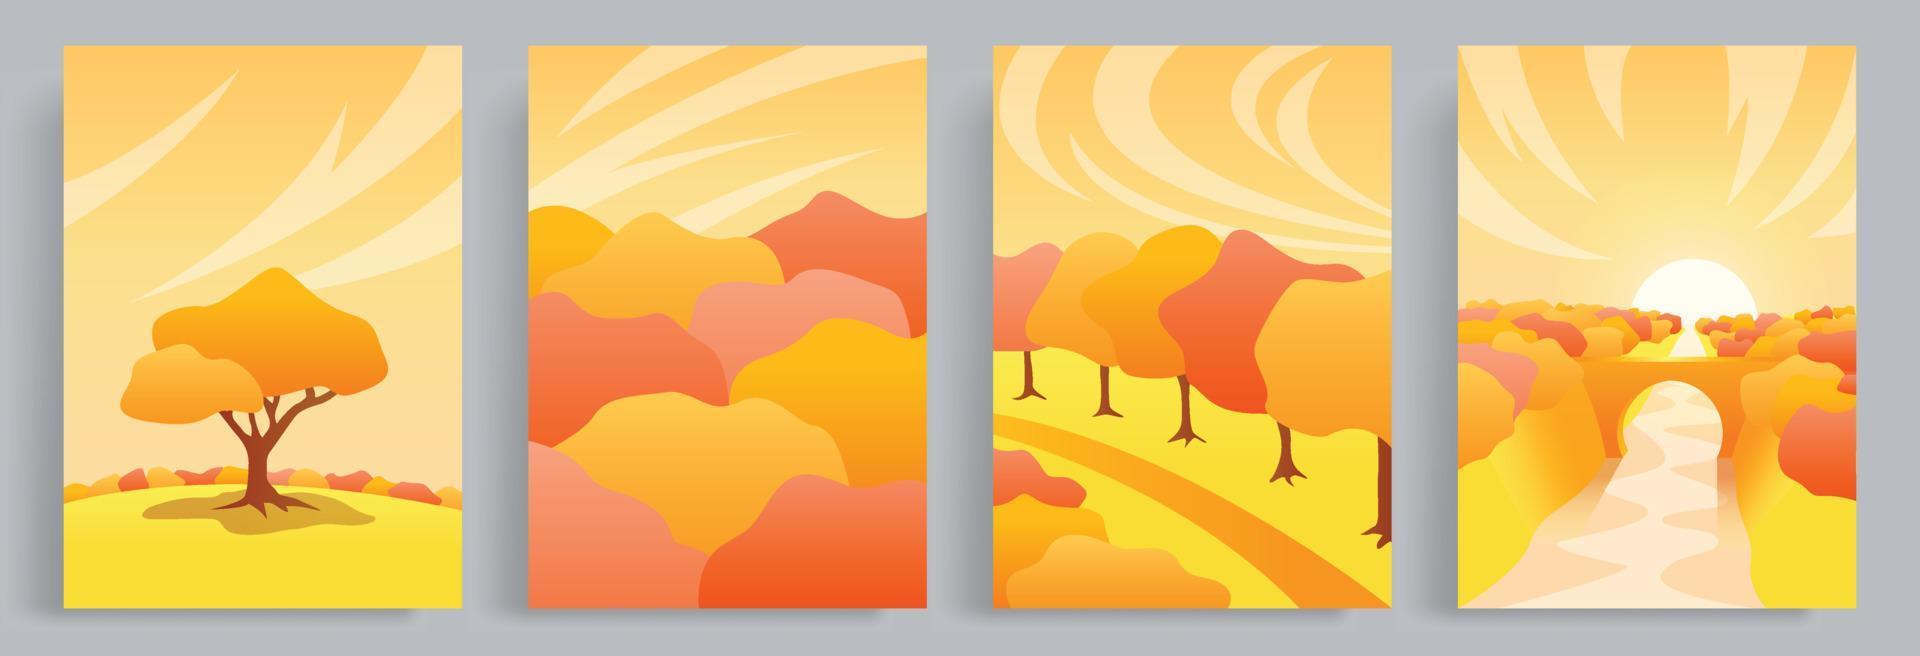 4 samlingar av höst vektor illustrationer med en värma, hygge och mysigt atmosfär. en se av de skog och träd den där är rödaktig i höst. lämplig för affisch, bok omslag, broschyr, bok omslag.